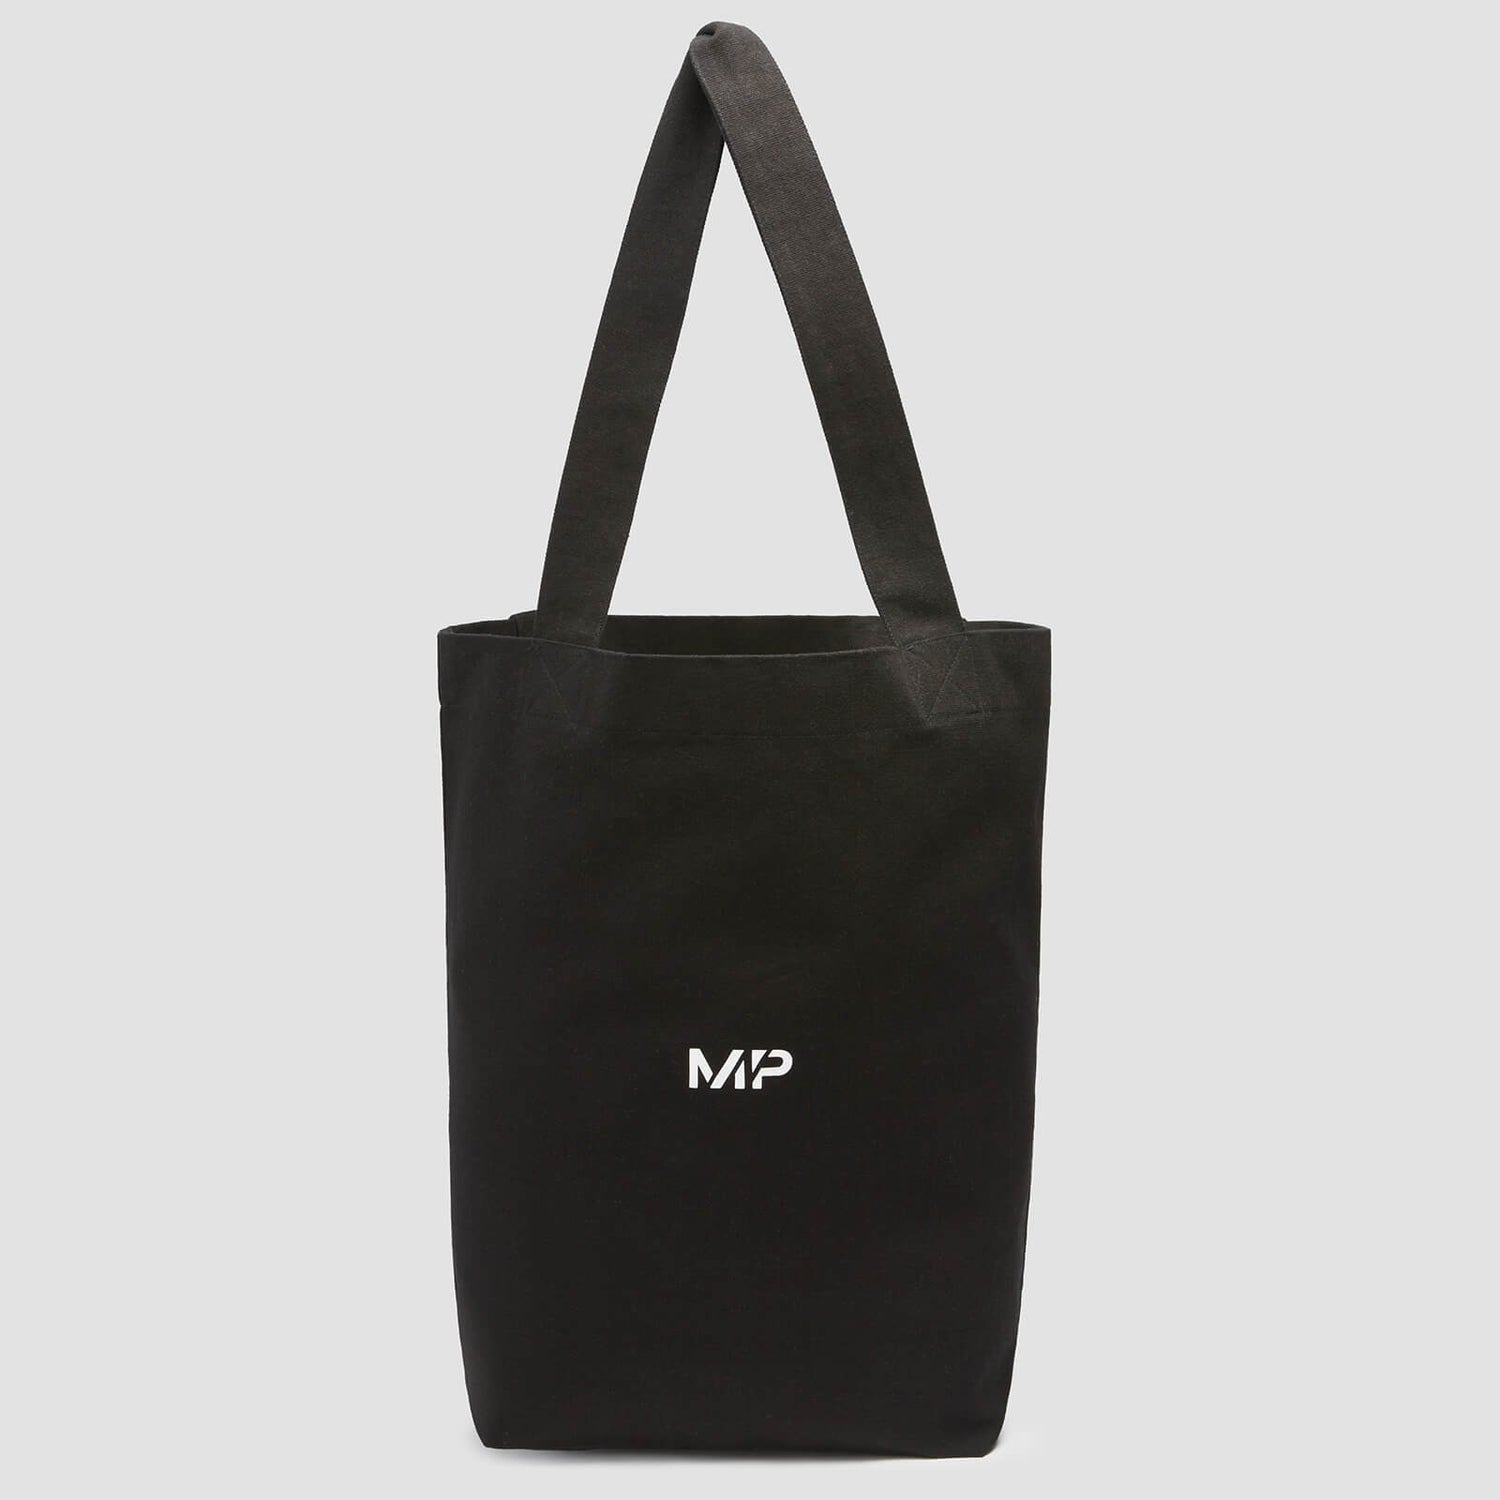 MP Canvas Tote Bag - platnena torba - crna